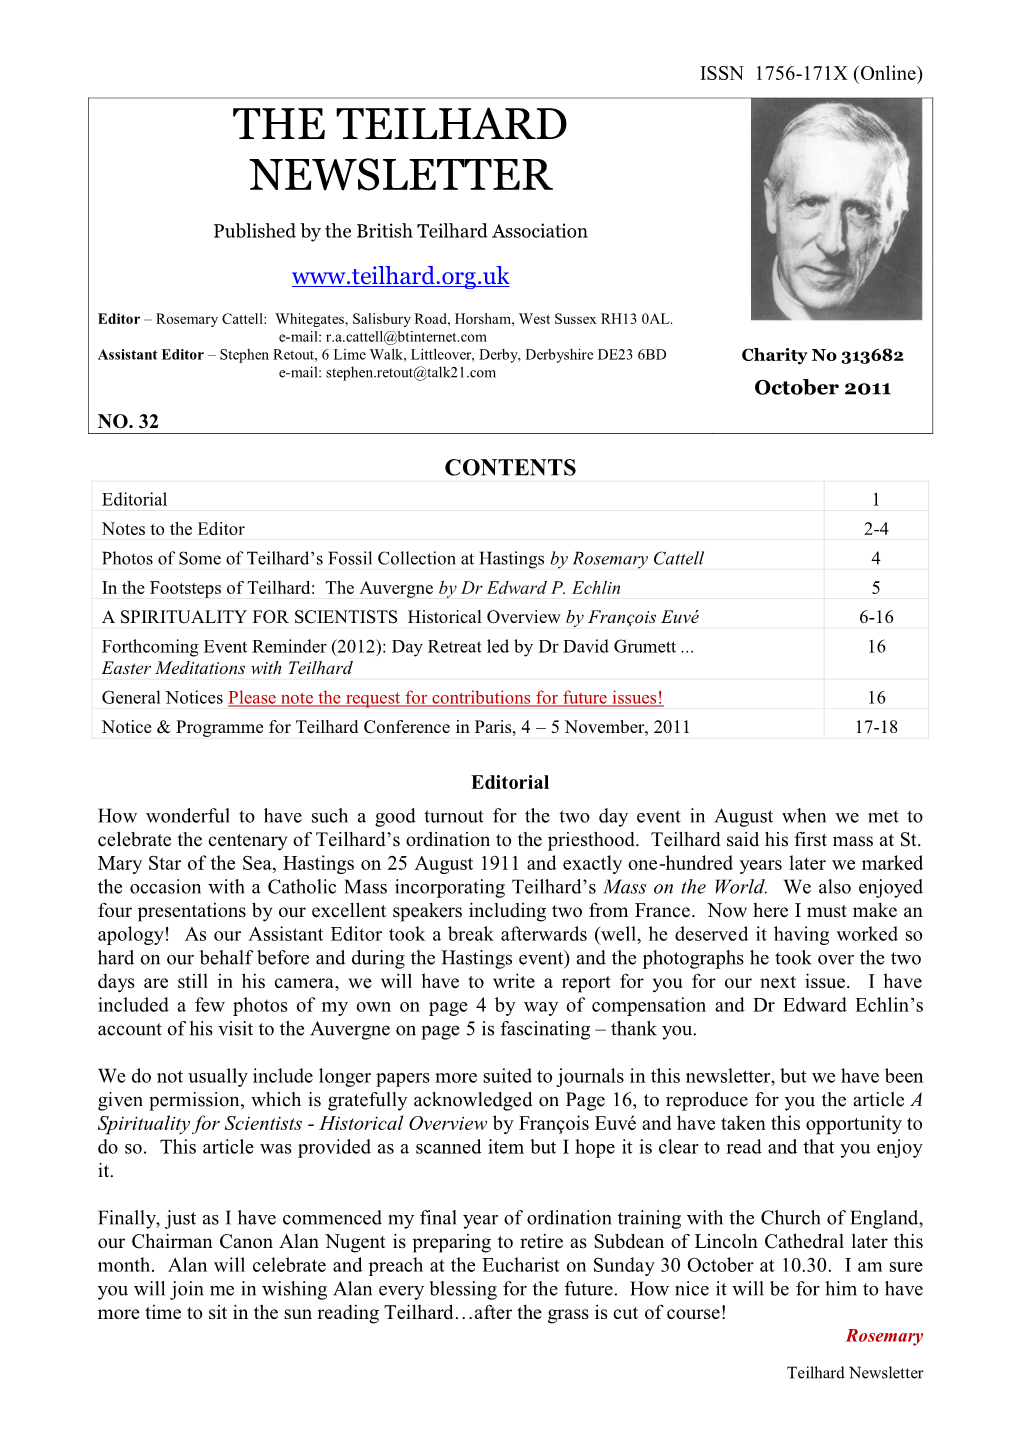 British Teilhard Association Newsletter 32